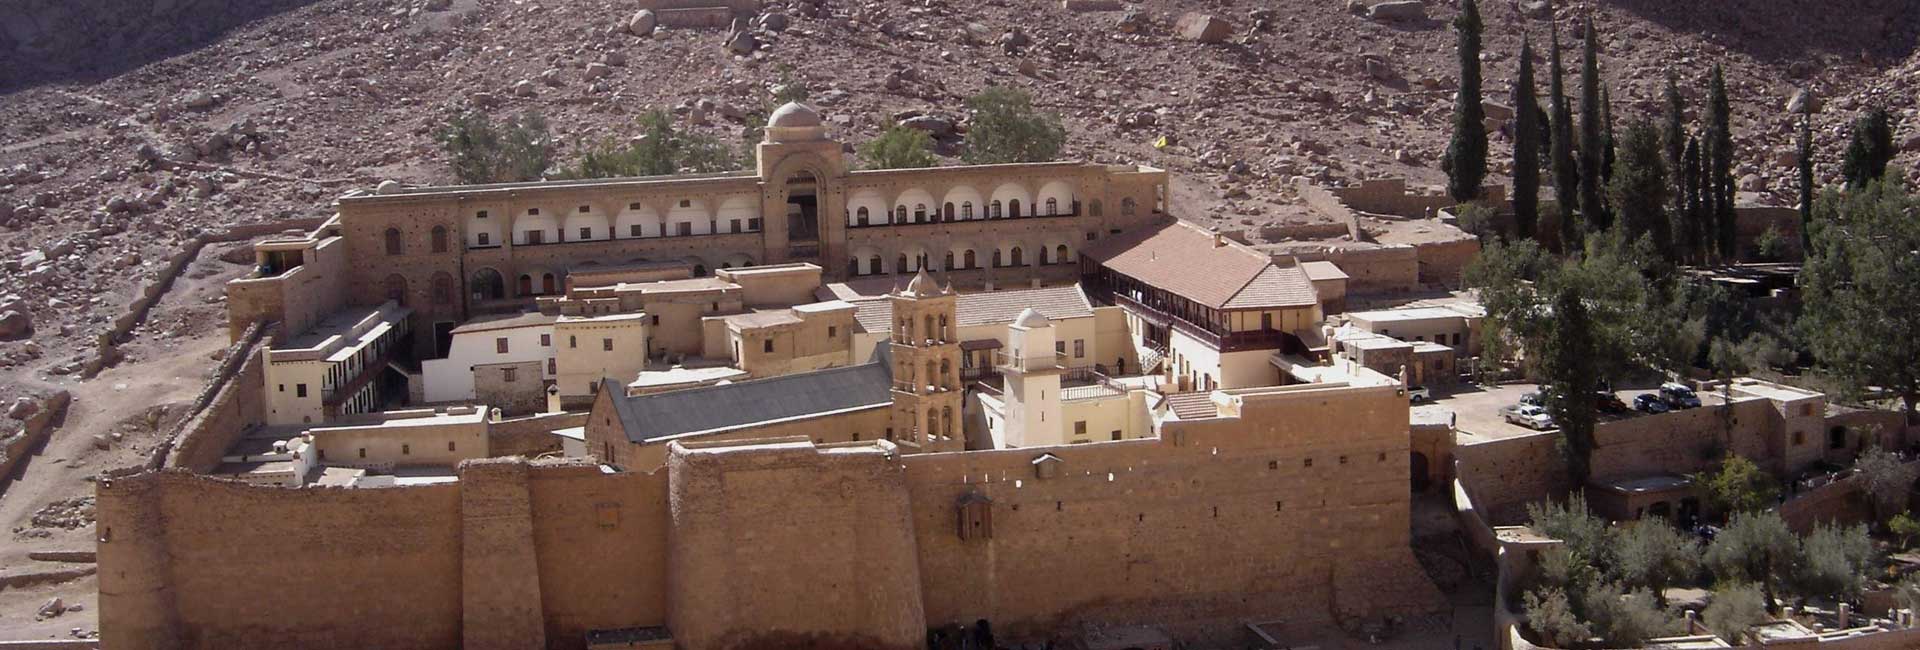 South Sinai Governorate